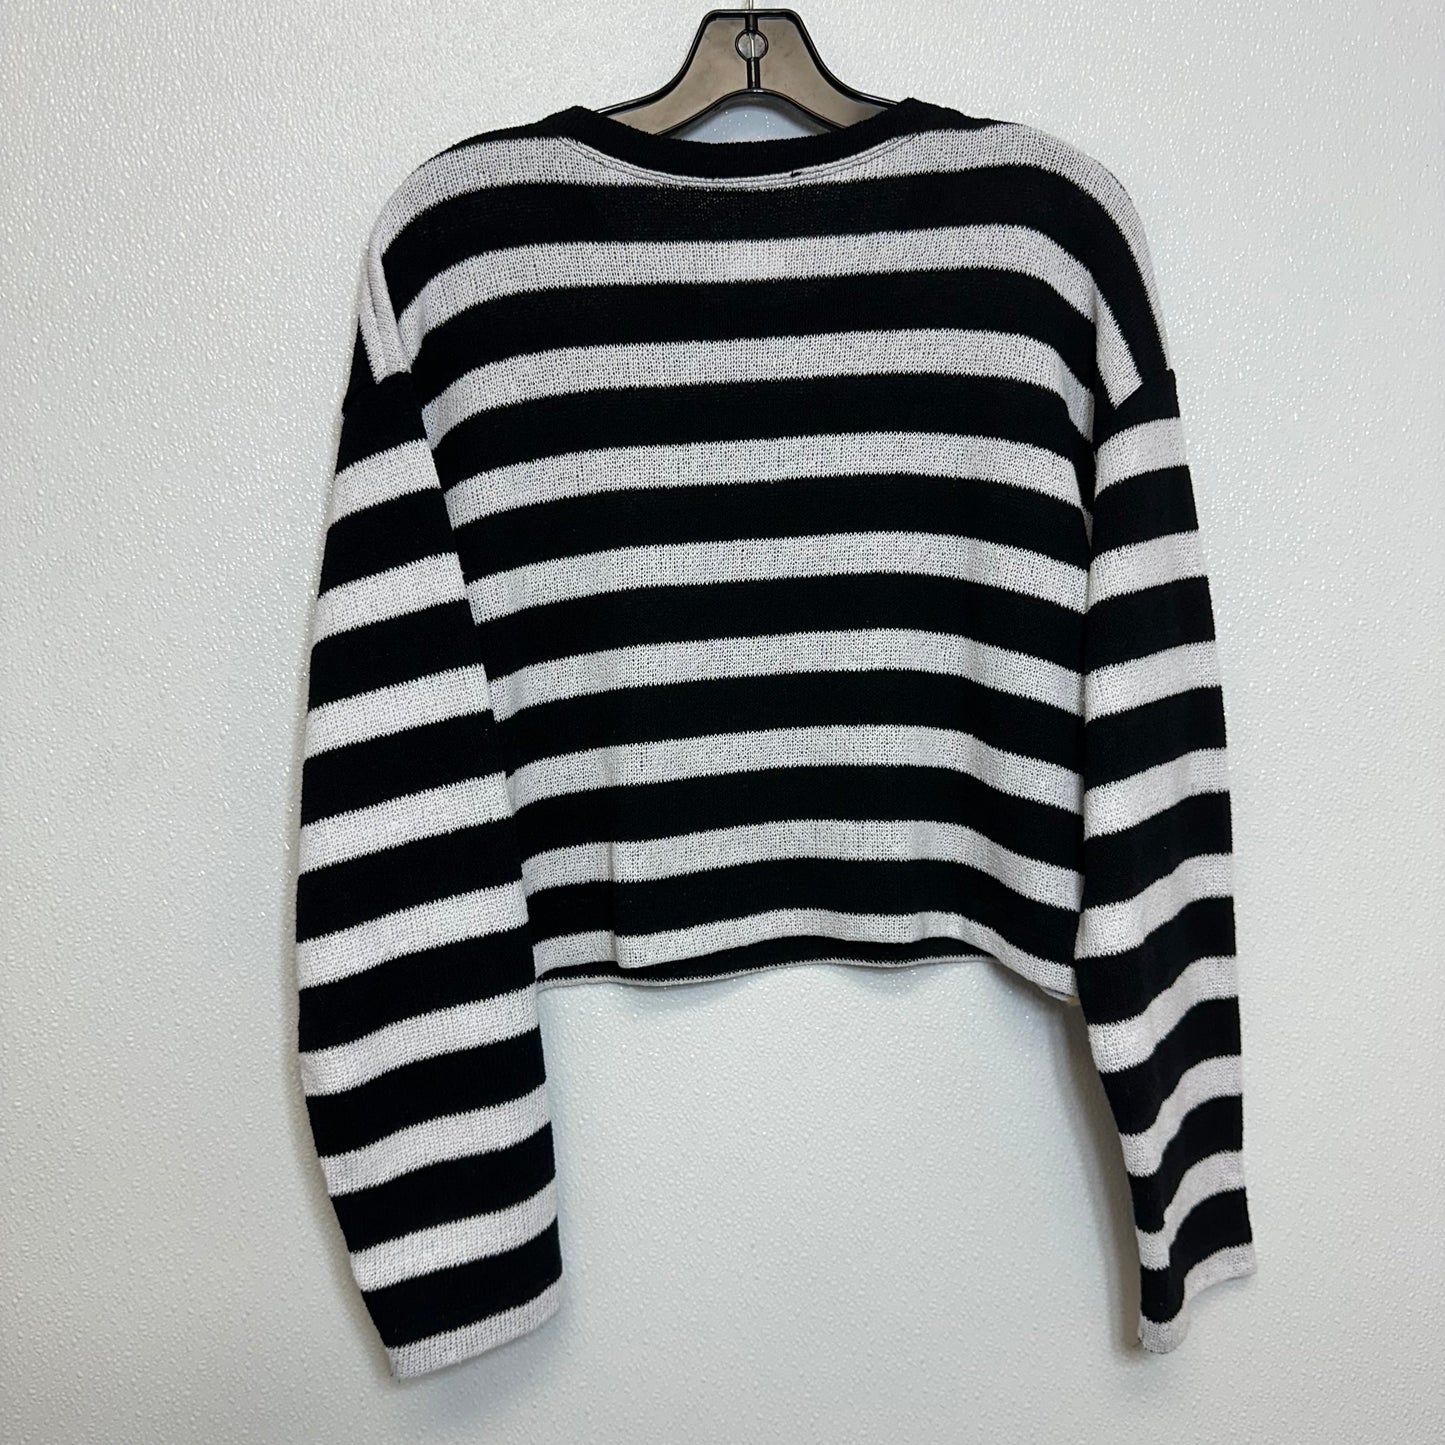 Sweater By Zara  Size: M